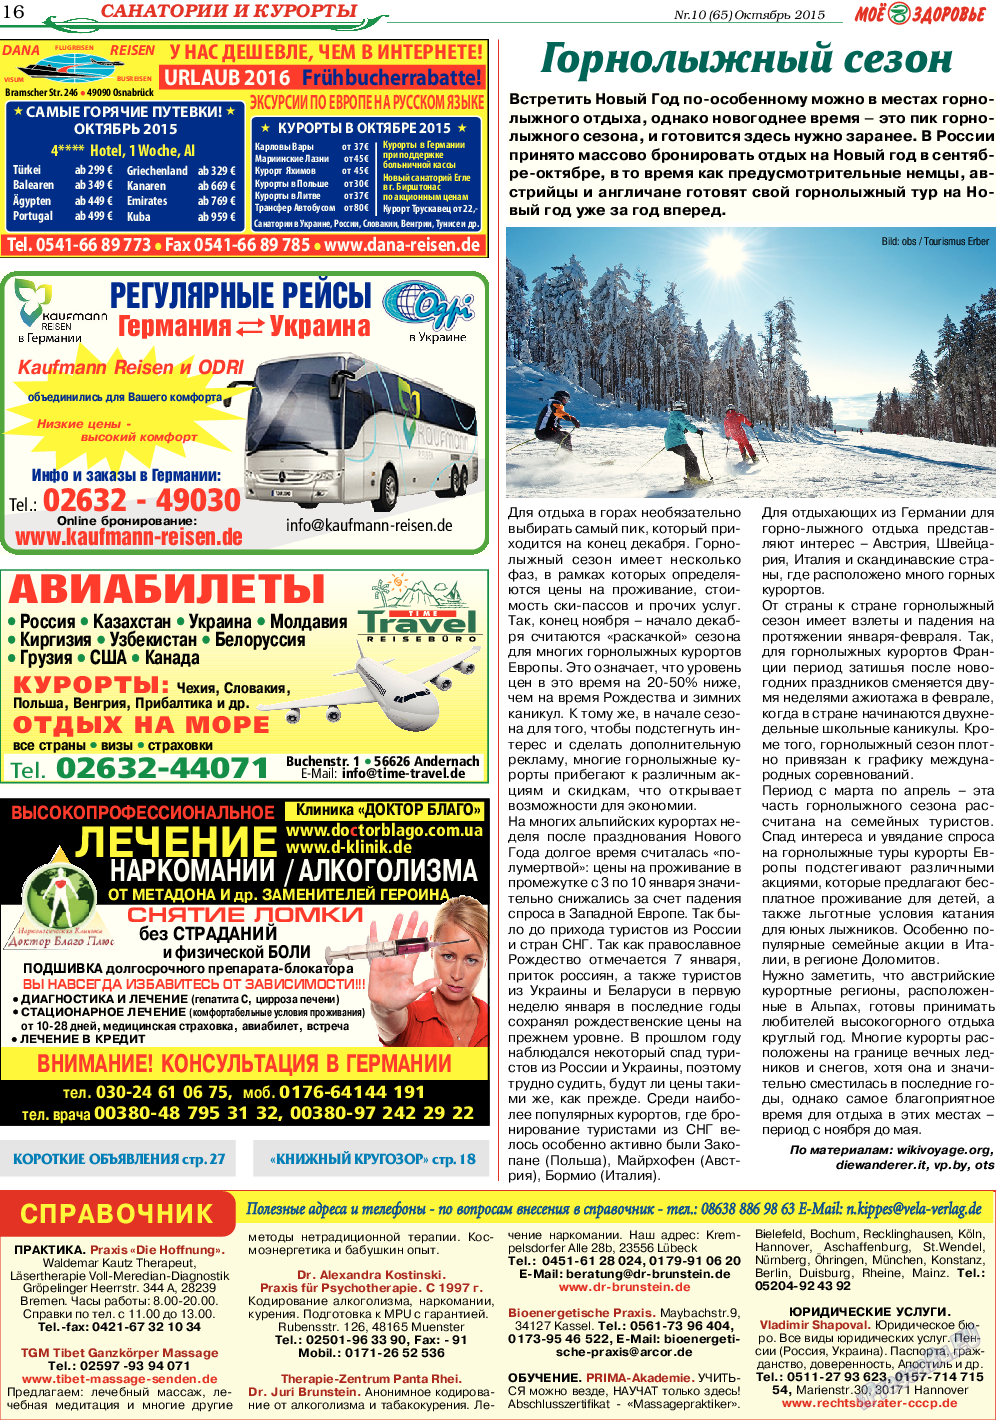 Кругозор, газета. 2015 №10 стр.16